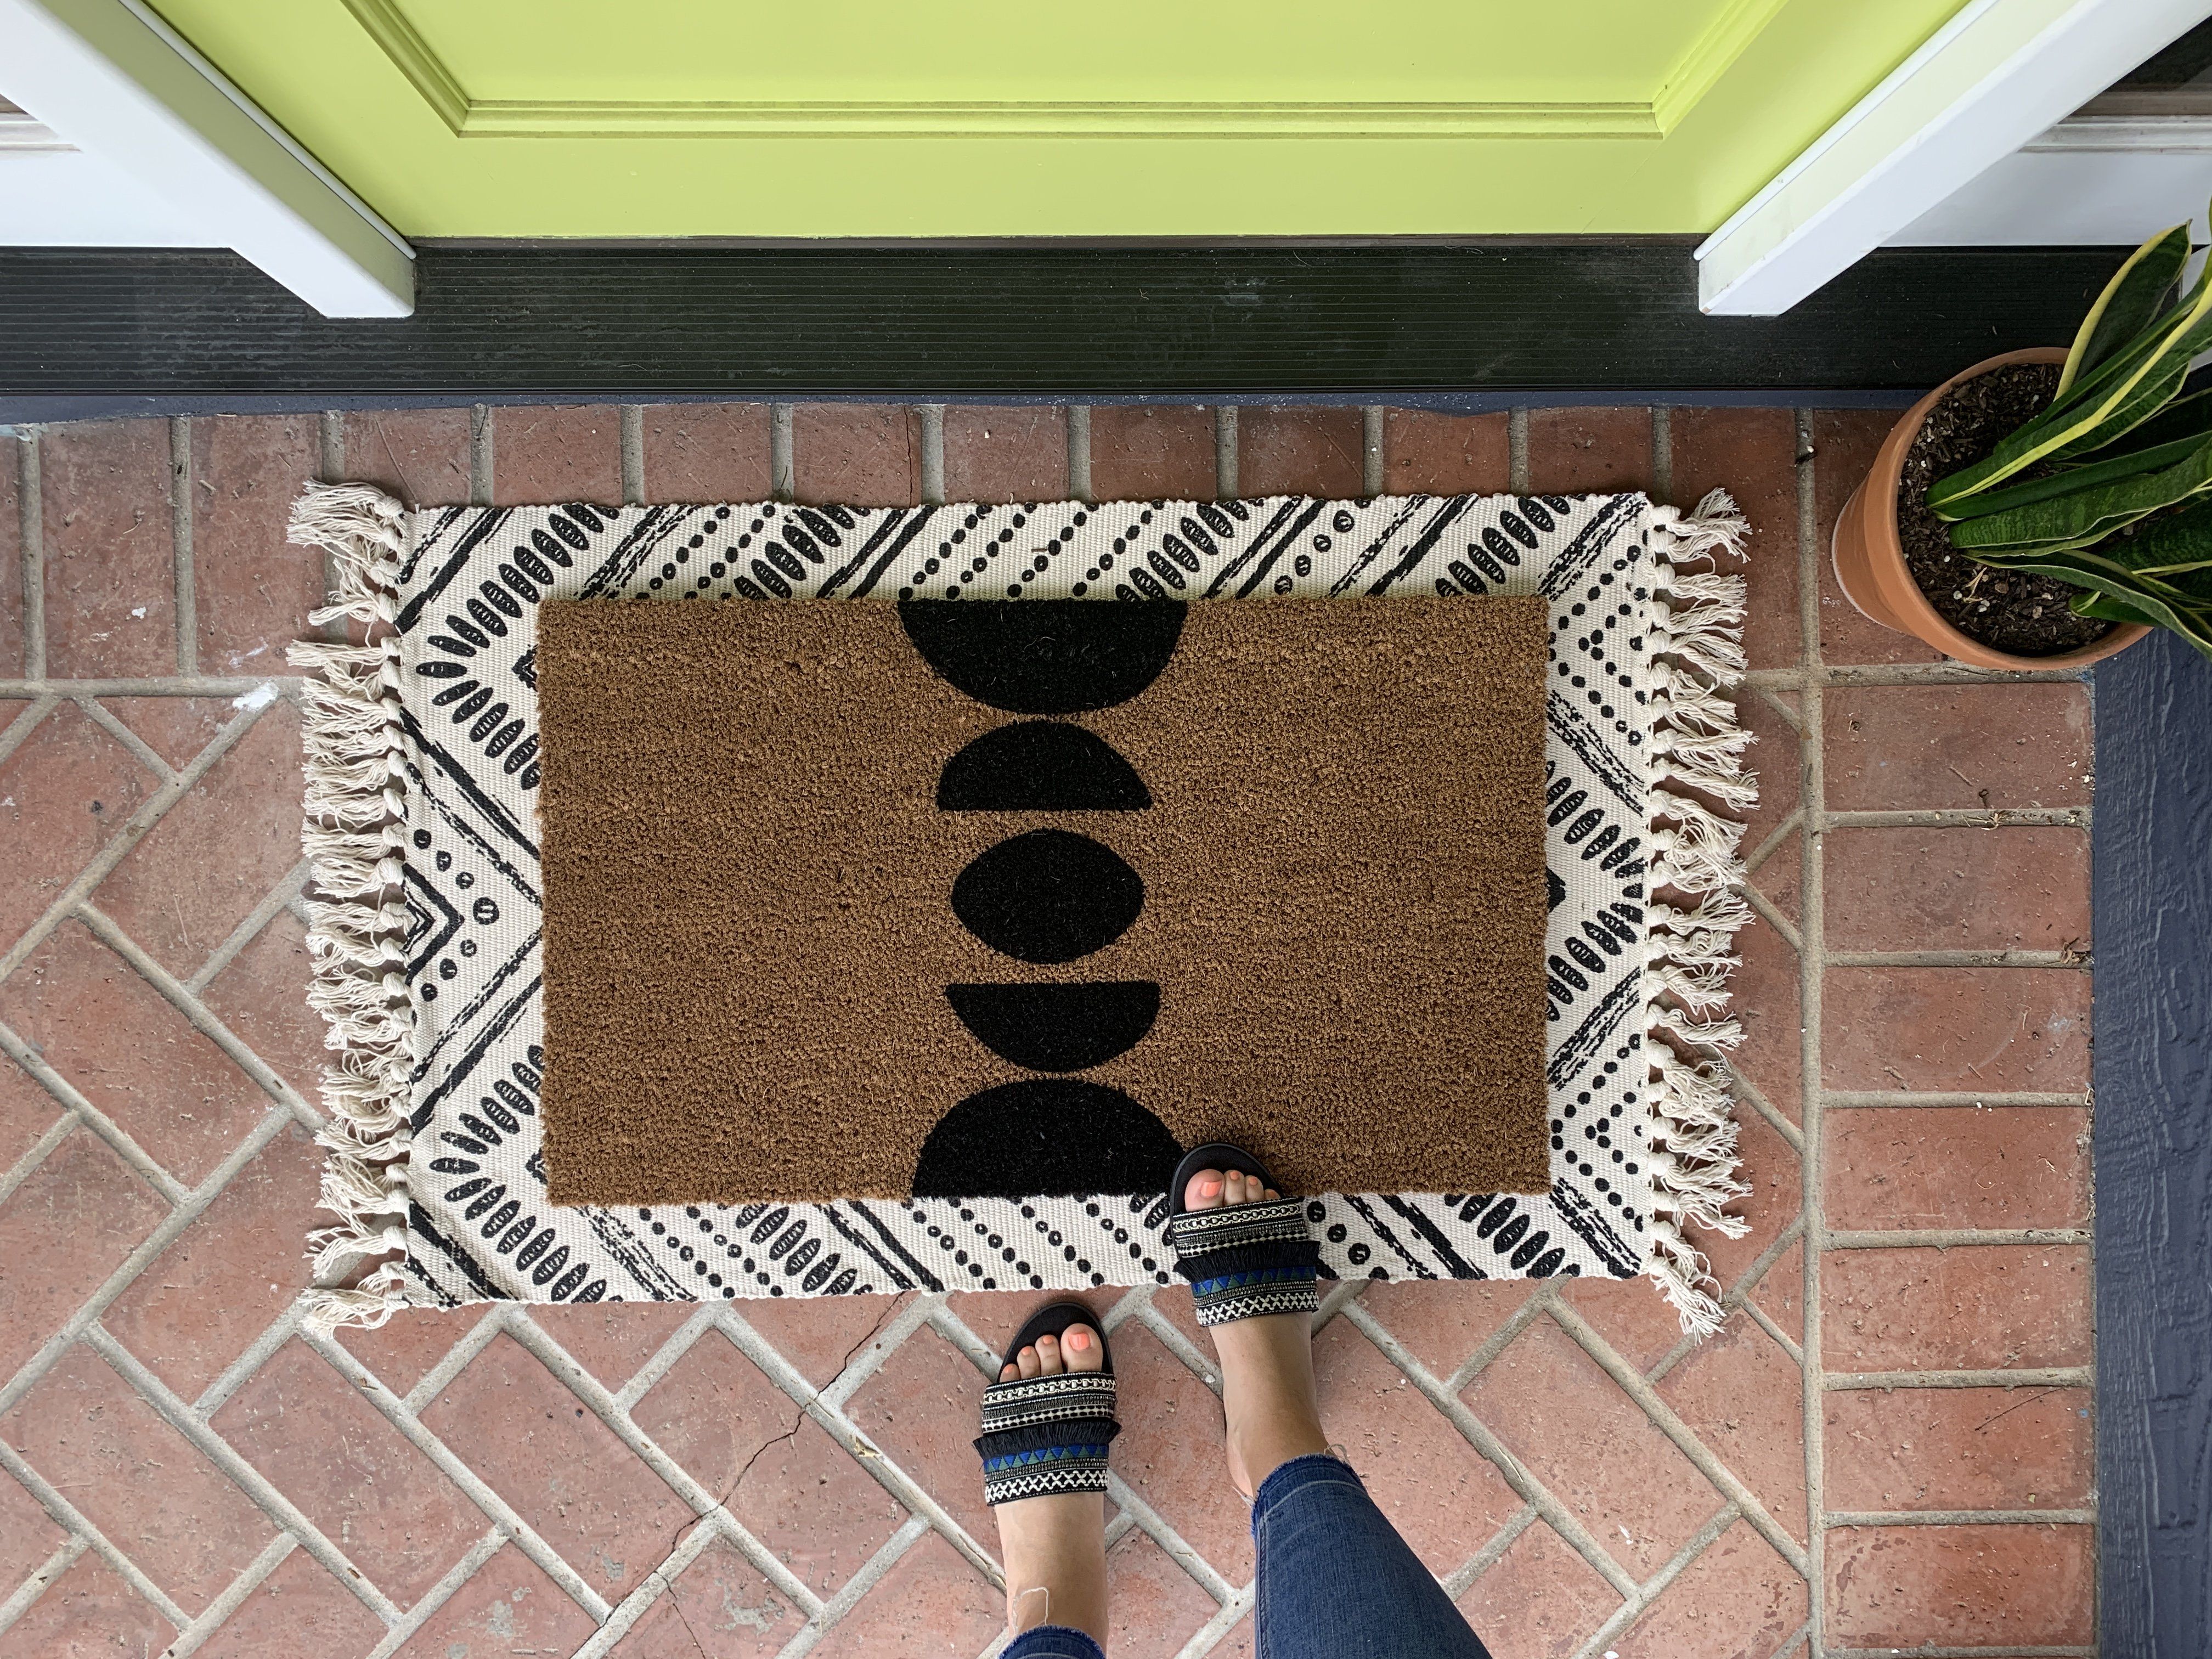 Modern YO Outdoor Doormat, Summer Doormats